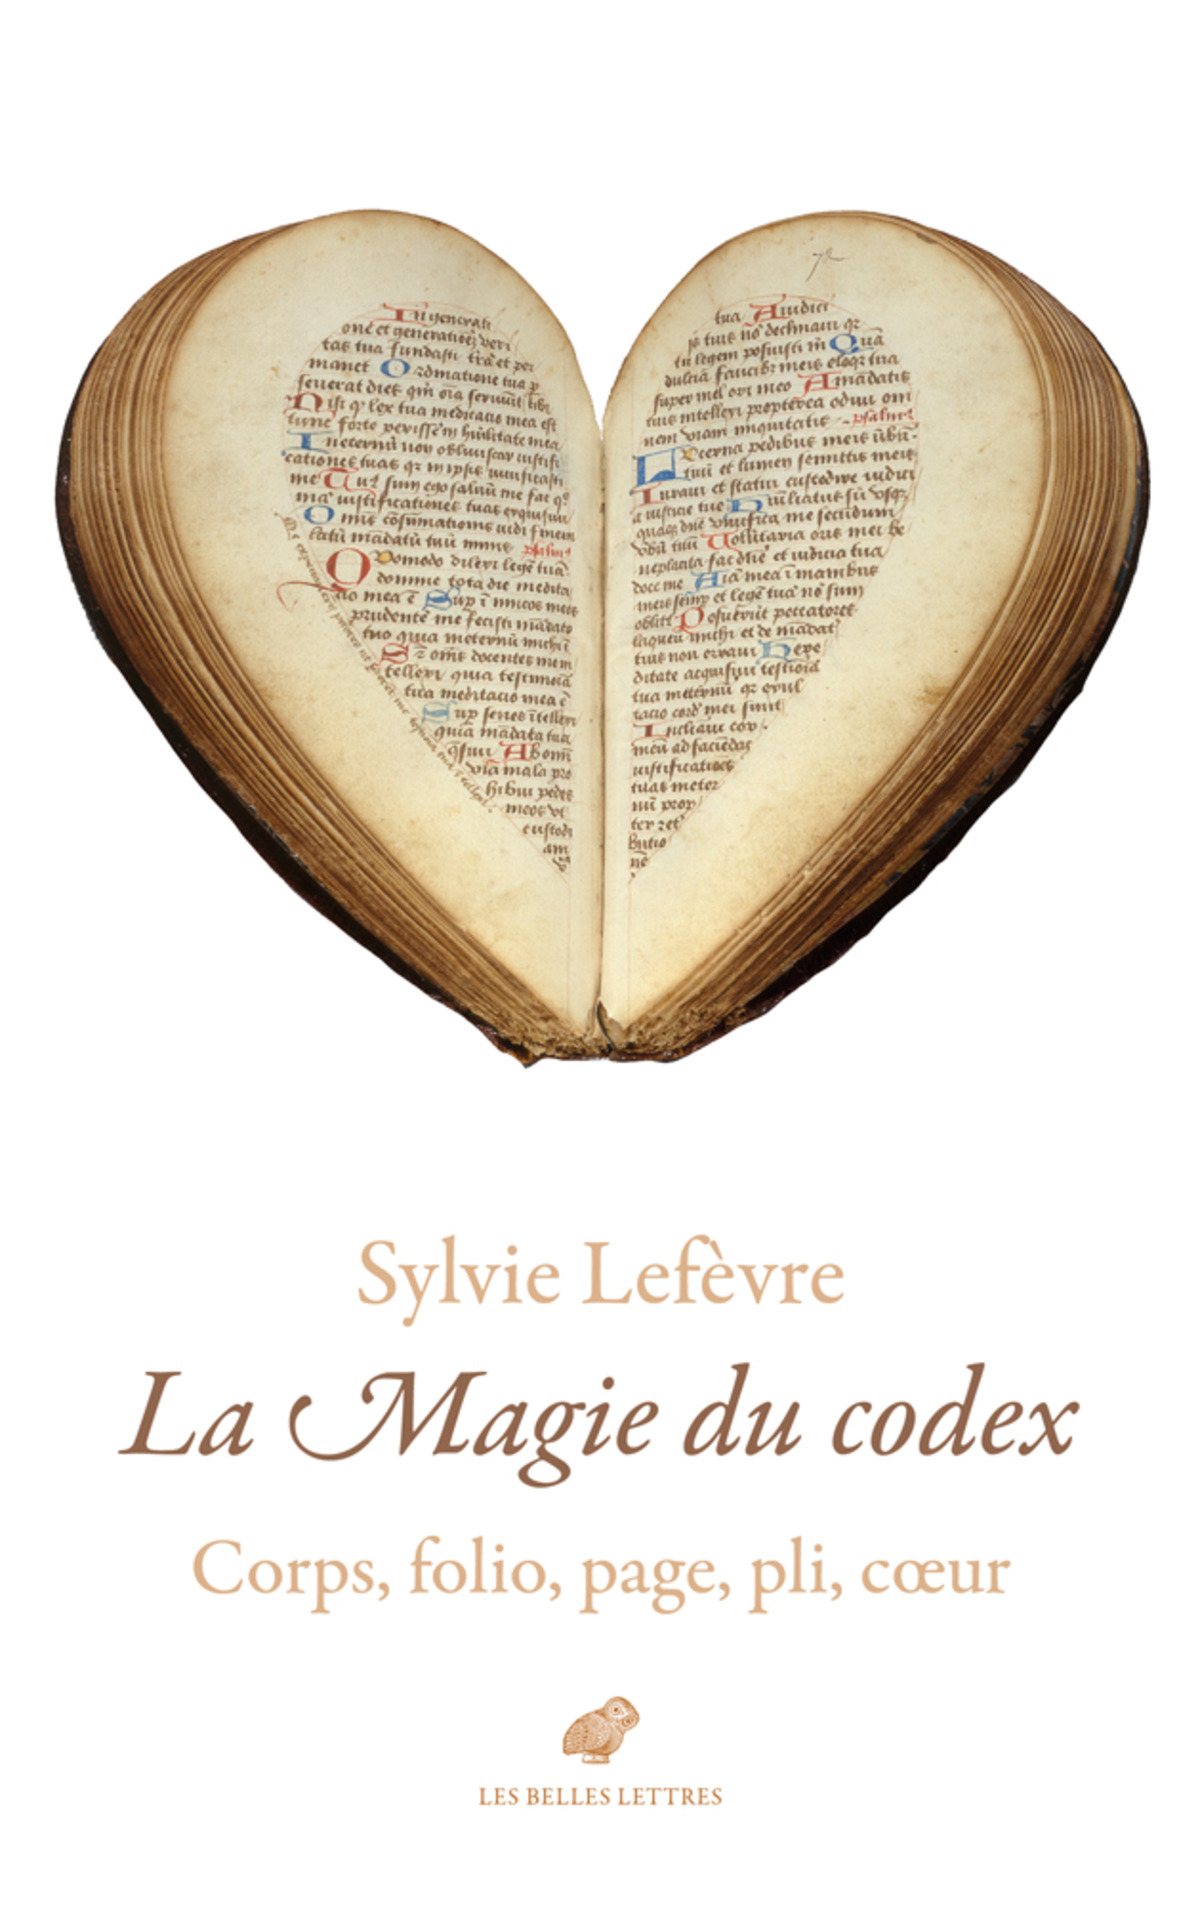 La Magie du codex